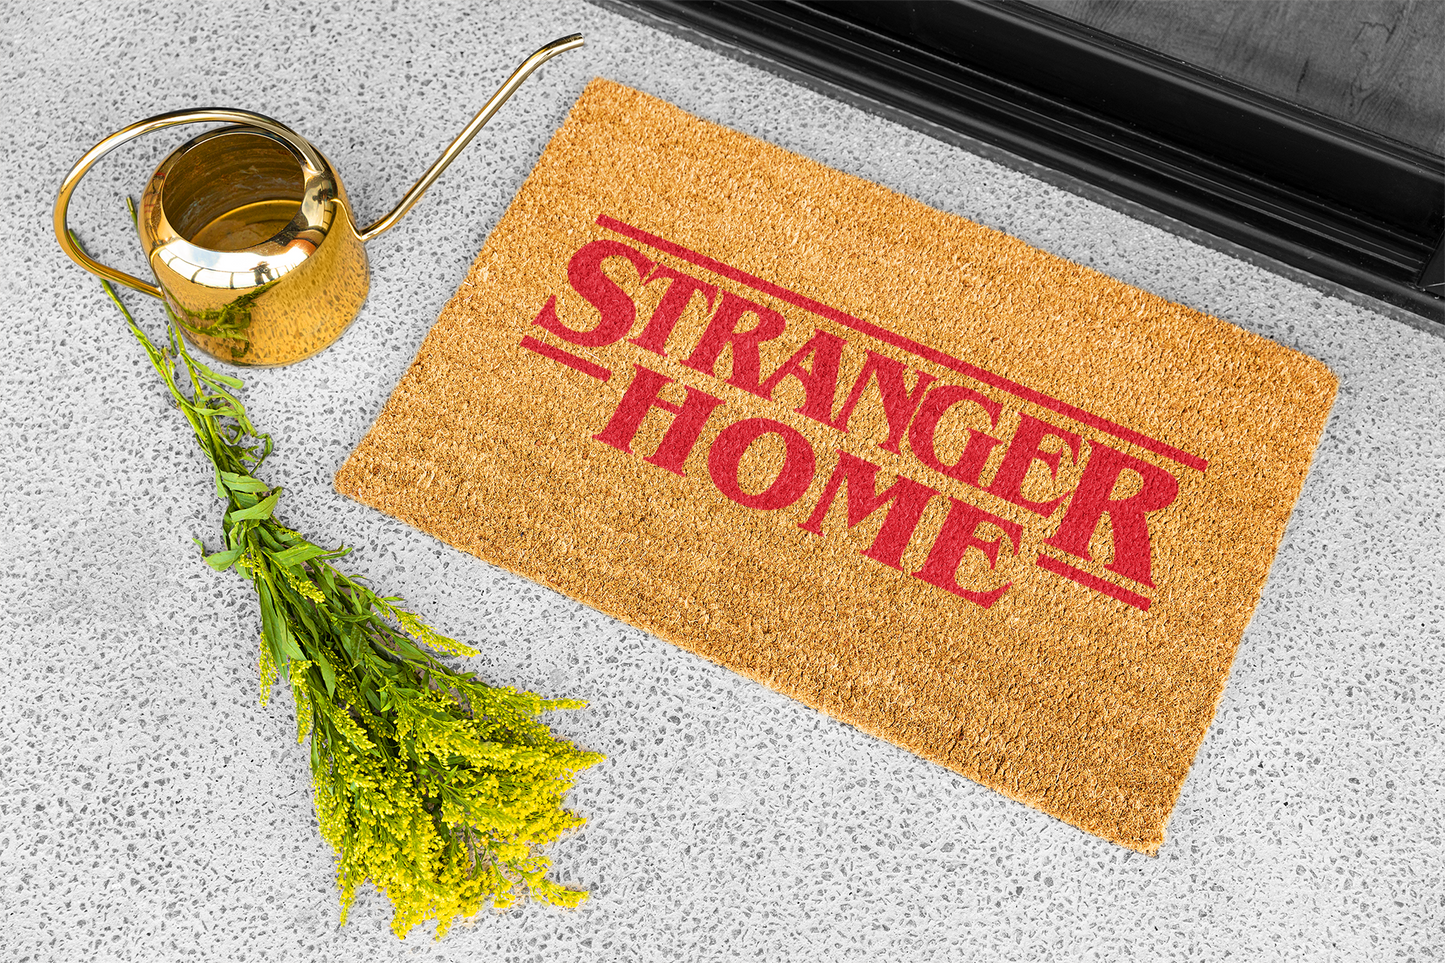 Felpudo "Stranger Home" 33x60cm. 100% fibra de coco resistente y fácil de limpiar. Eco-friendly.